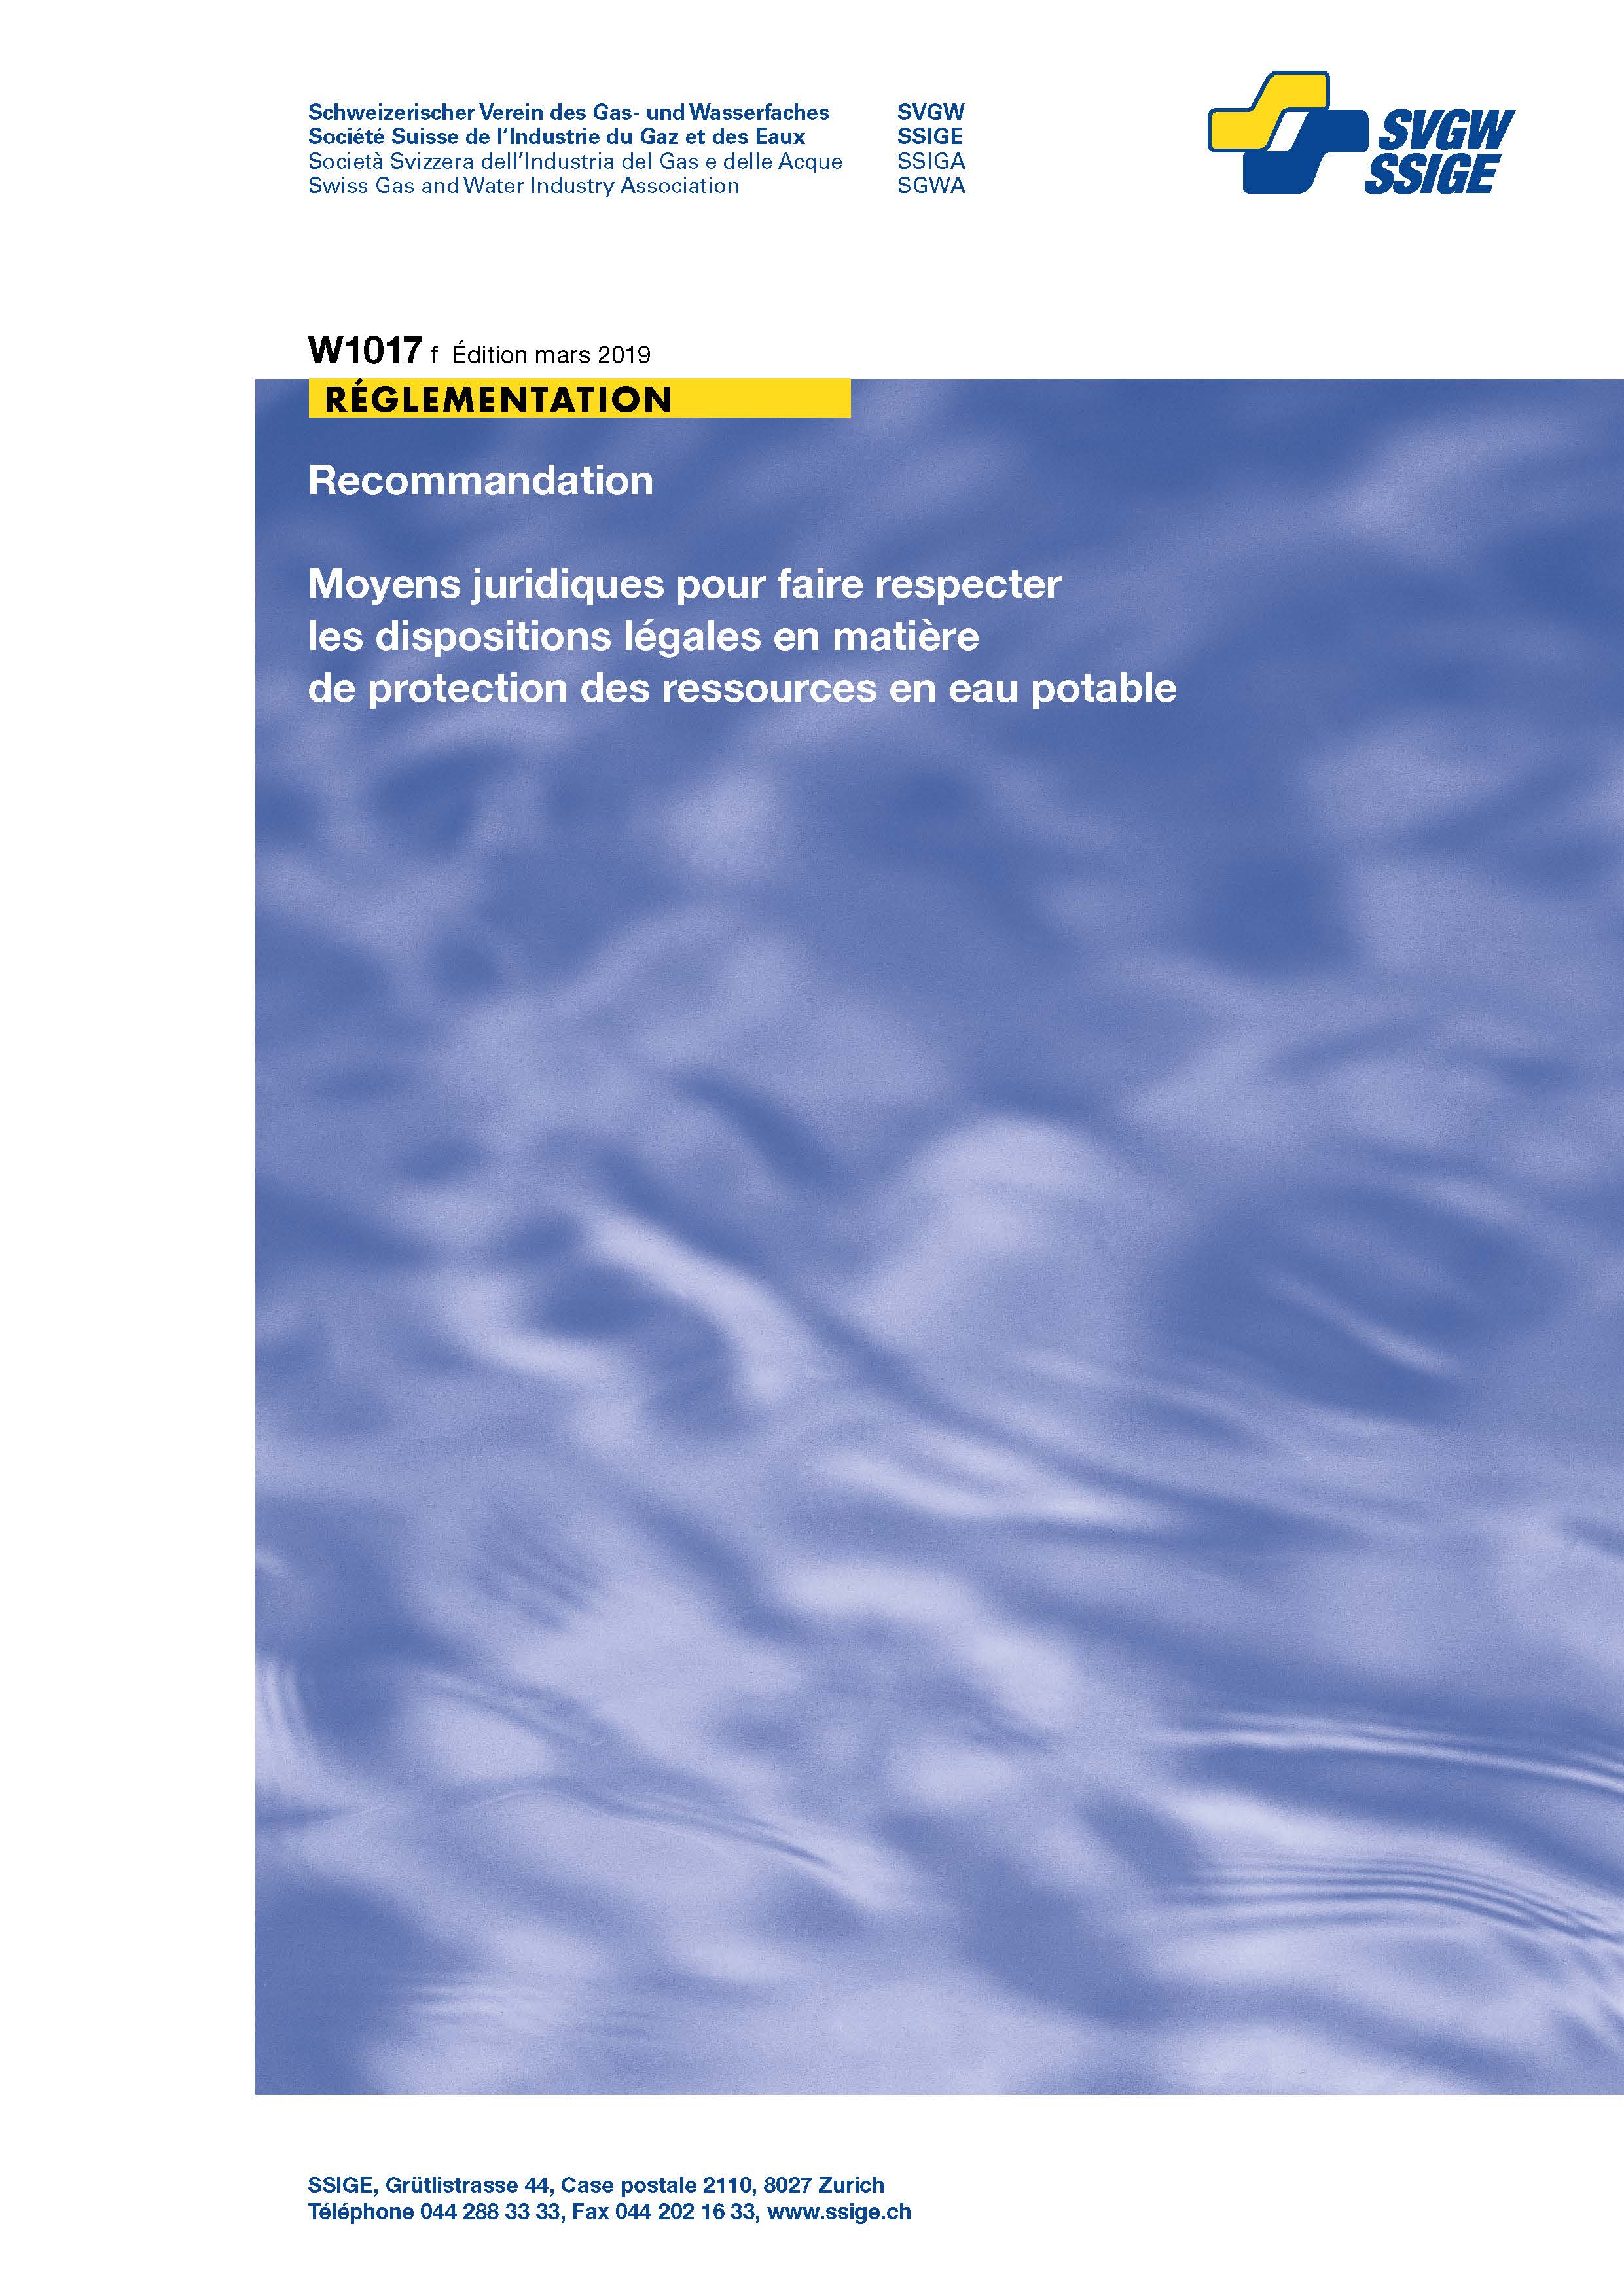 W1017 f Recommandation; Moyens juridiques pour faire respecter les dispositions légales en matière de protection des ressources en eau potable (Print+PDF)